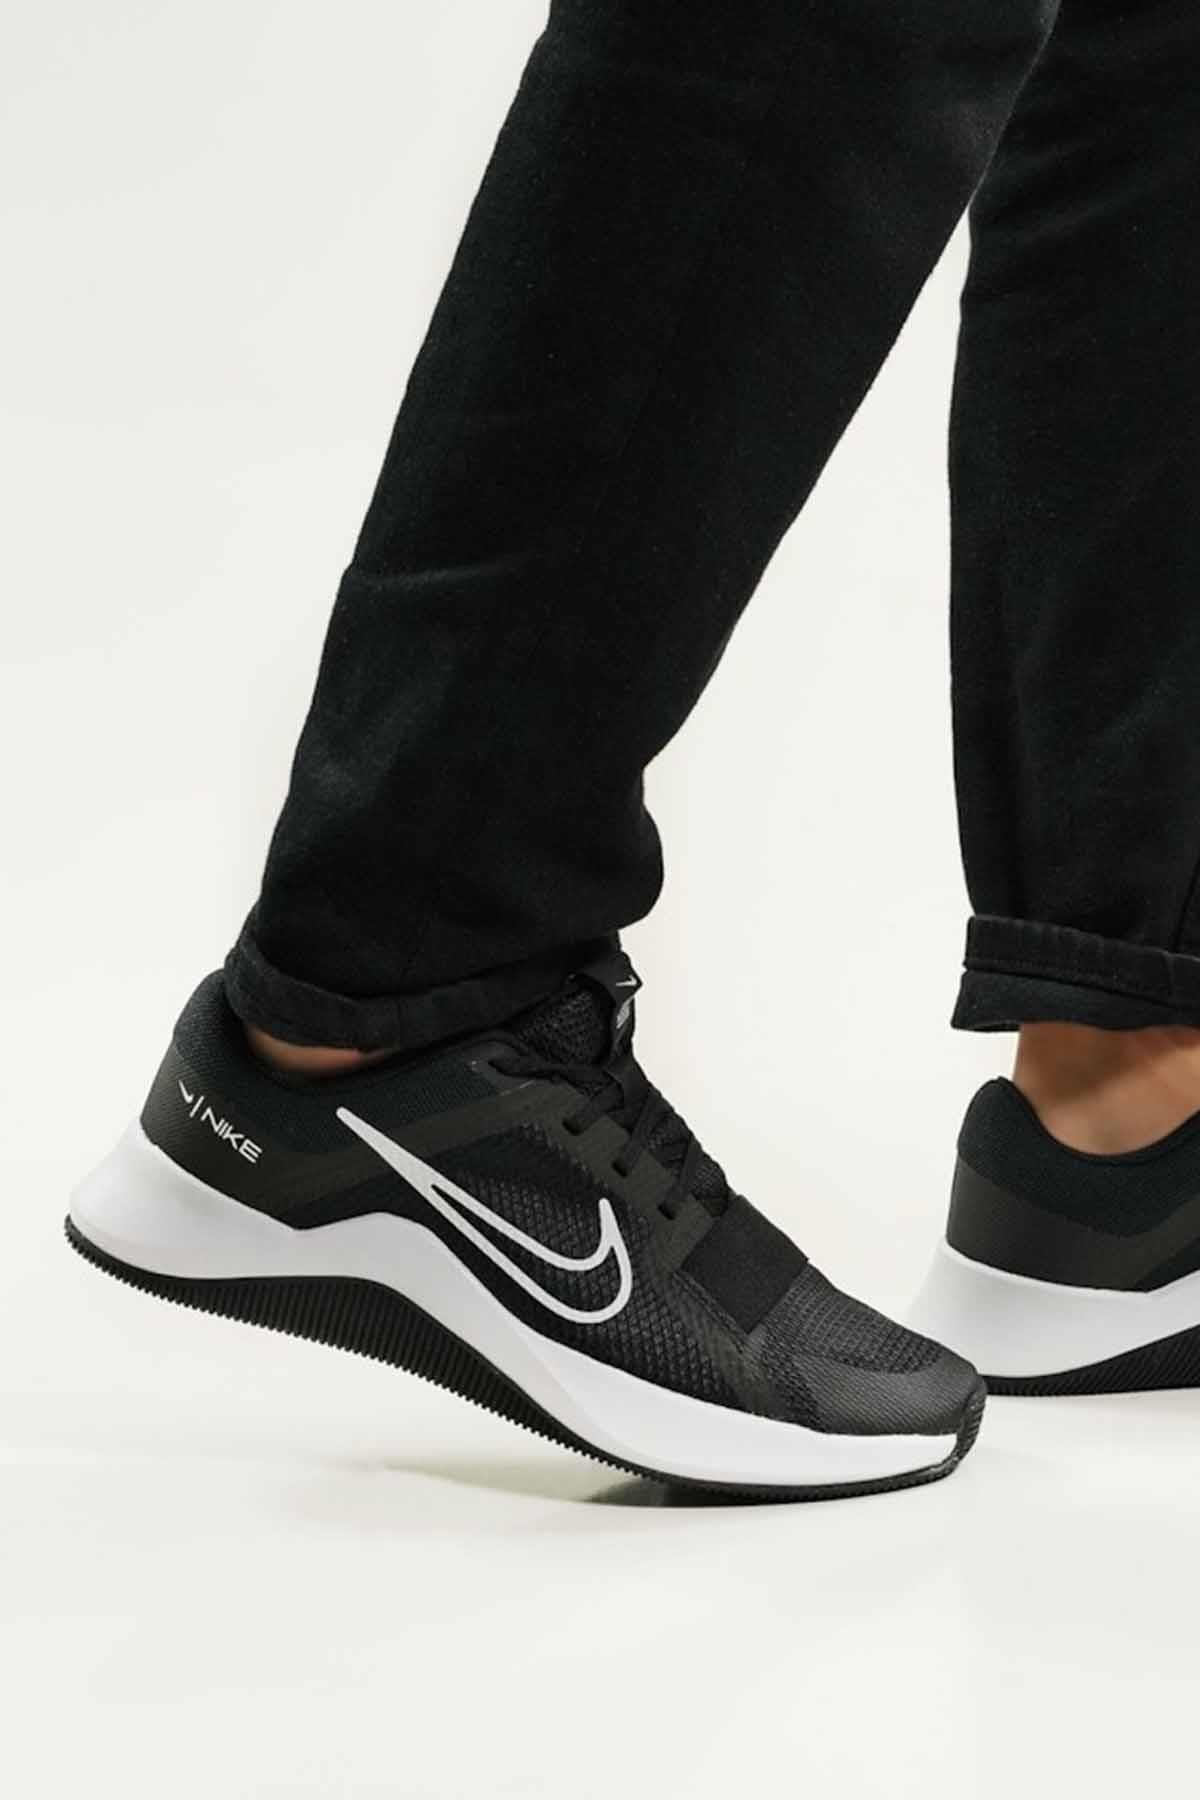 Nike MC Trainer 2 Erkek Yürüyüş Koşu Ayakkabı DM0823-003-Siyah-Byz